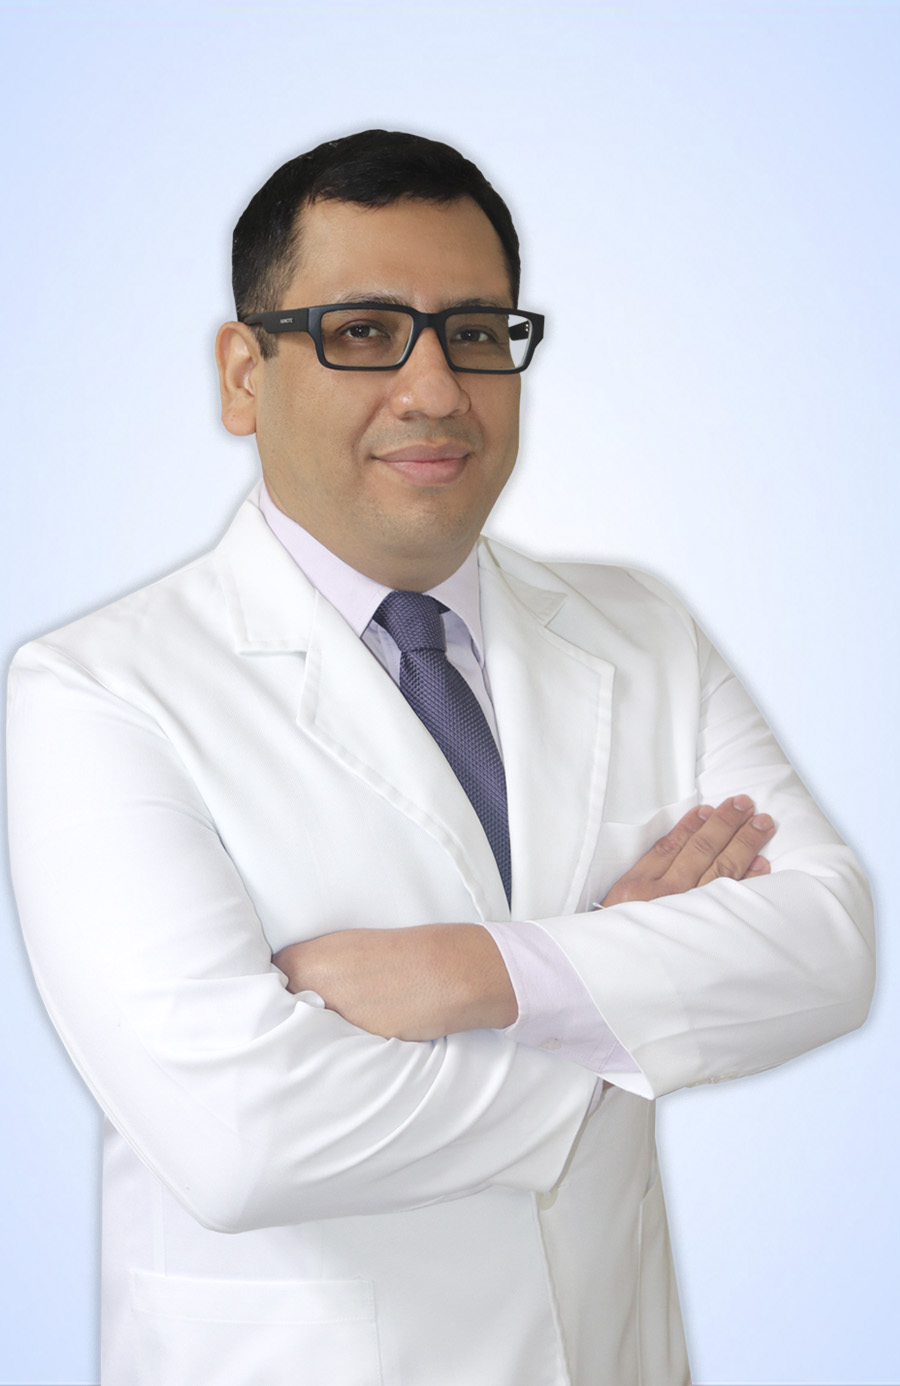 DR. HERNANDEZ